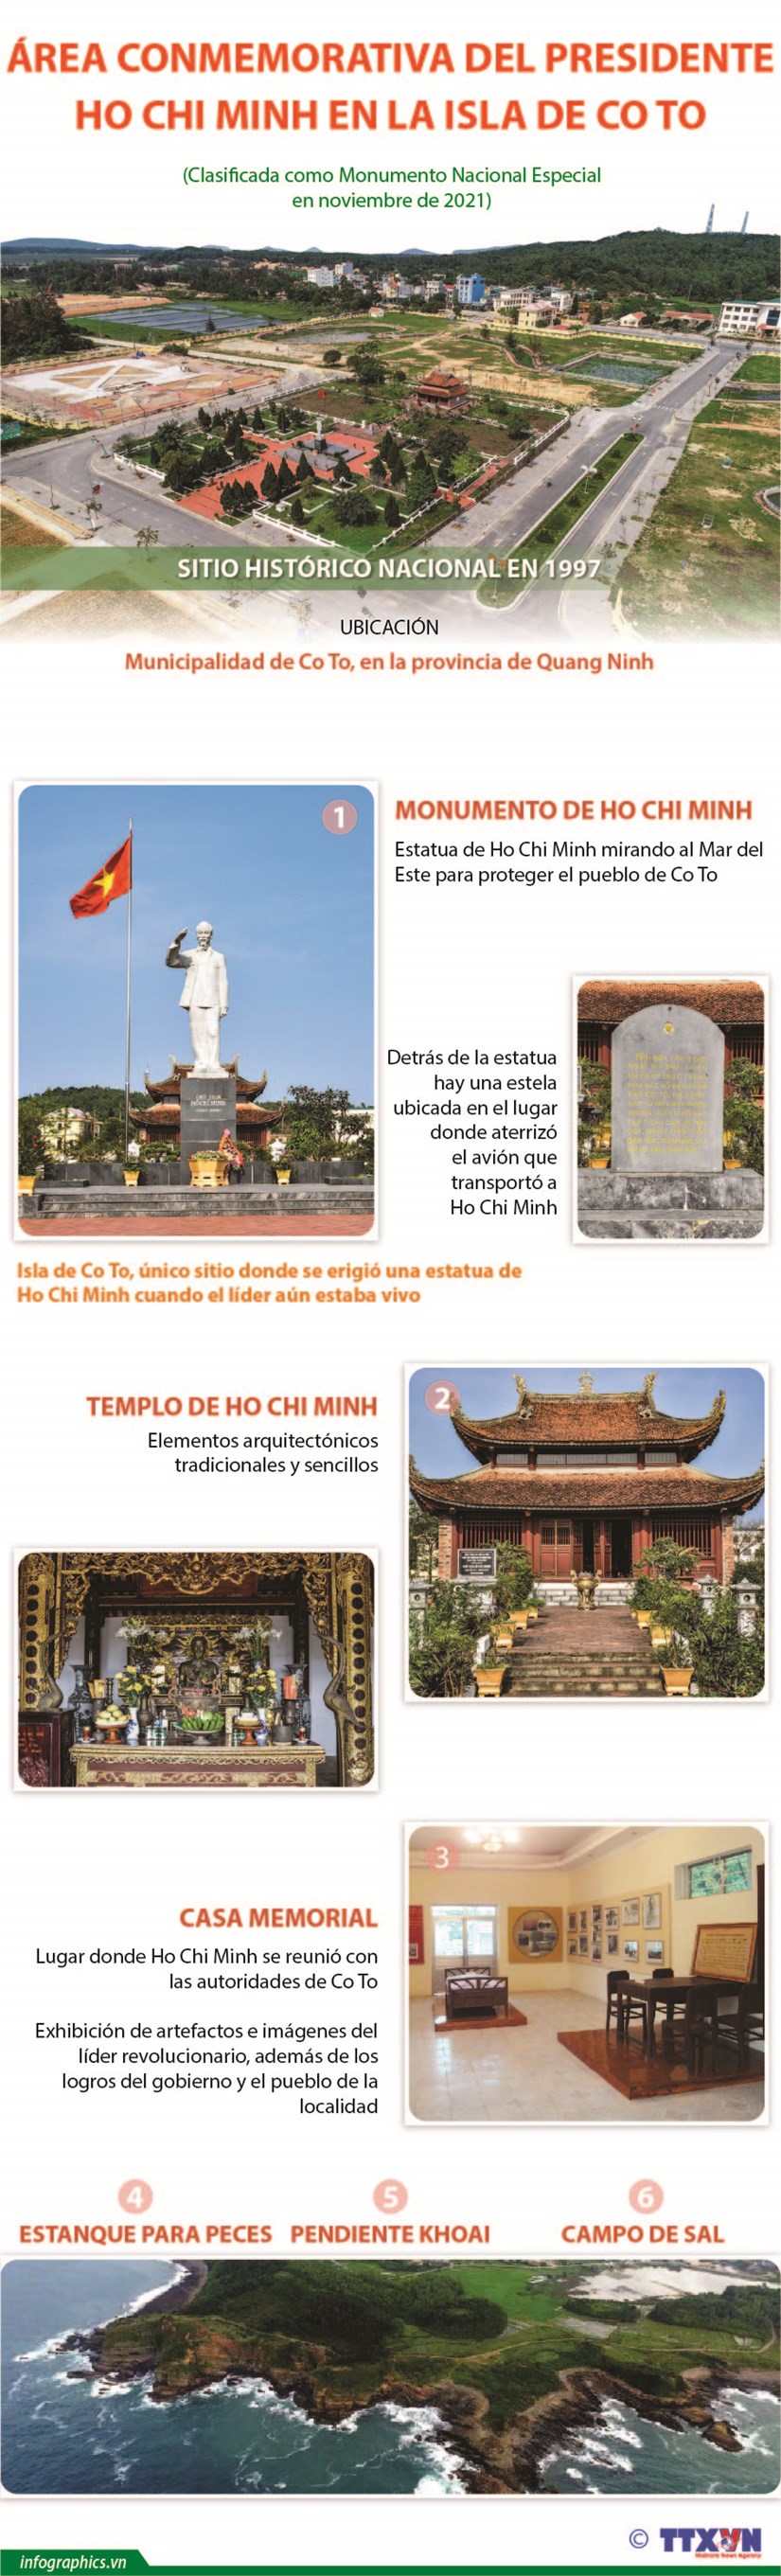 Area conmemorativa del Presidente Ho Chi Minh en la isla de Co To hinh anh 1